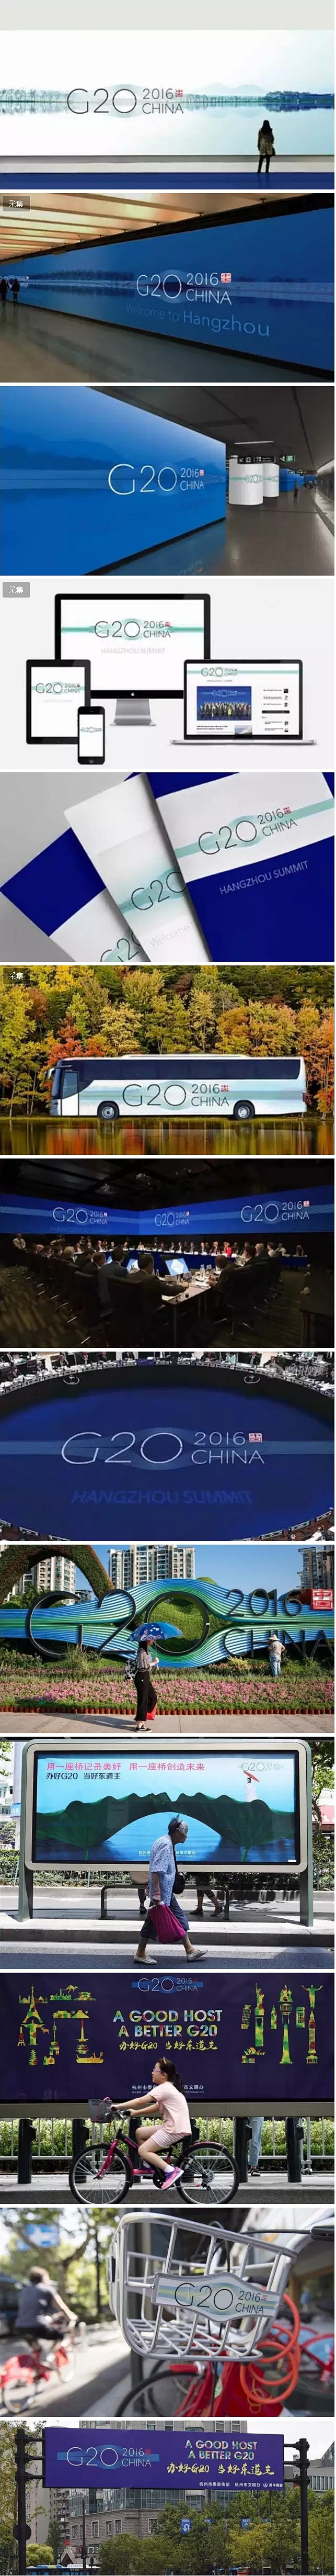 杭州G20峰会LOGO解读及往期欣赏带你...